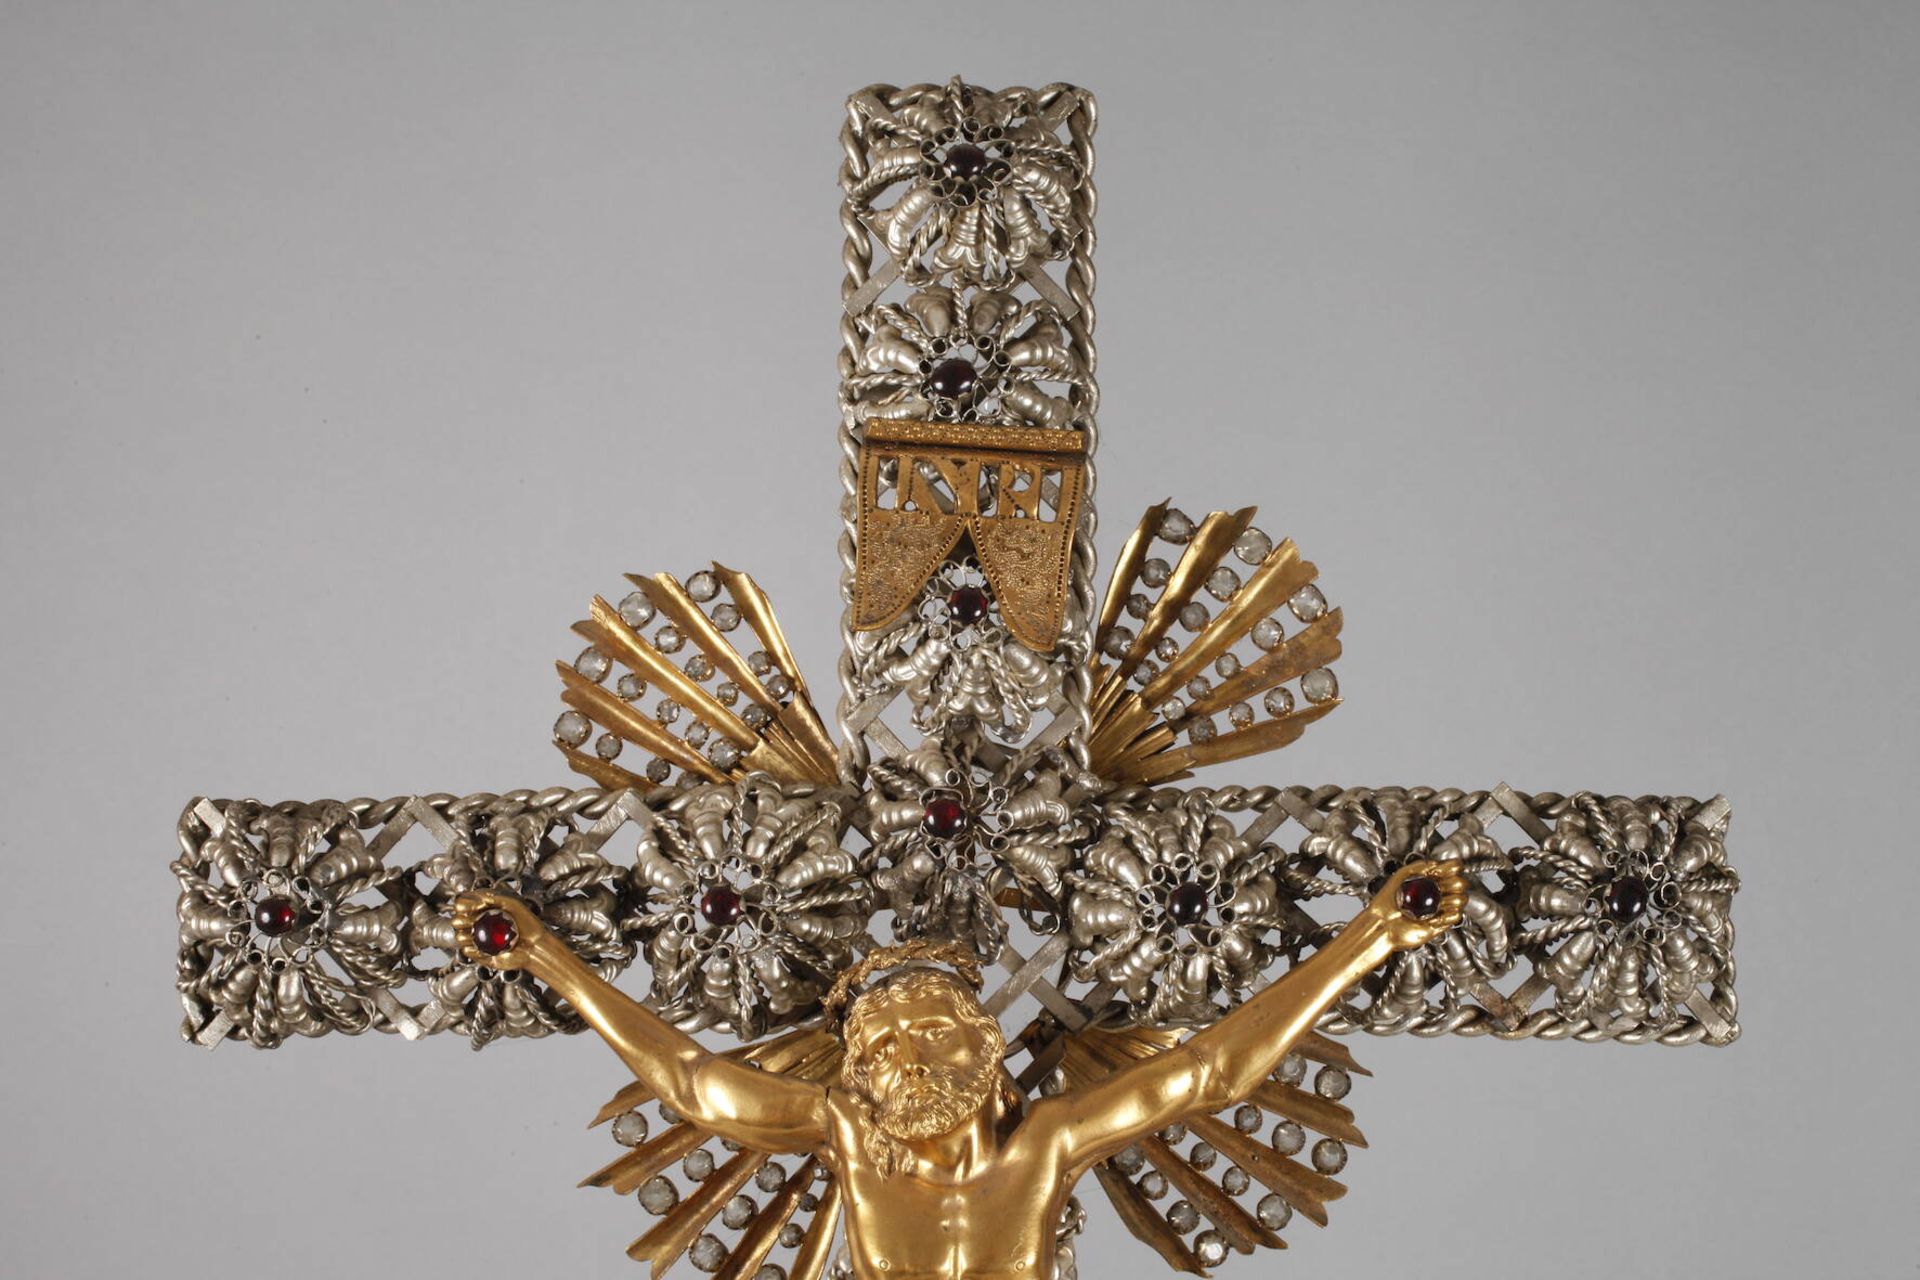 Großes Kruzifix Ende 19. Jh., Klosterarbeit, Messing und Weißmetall, Sockel und Kreuz durchbrochen - Bild 3 aus 7